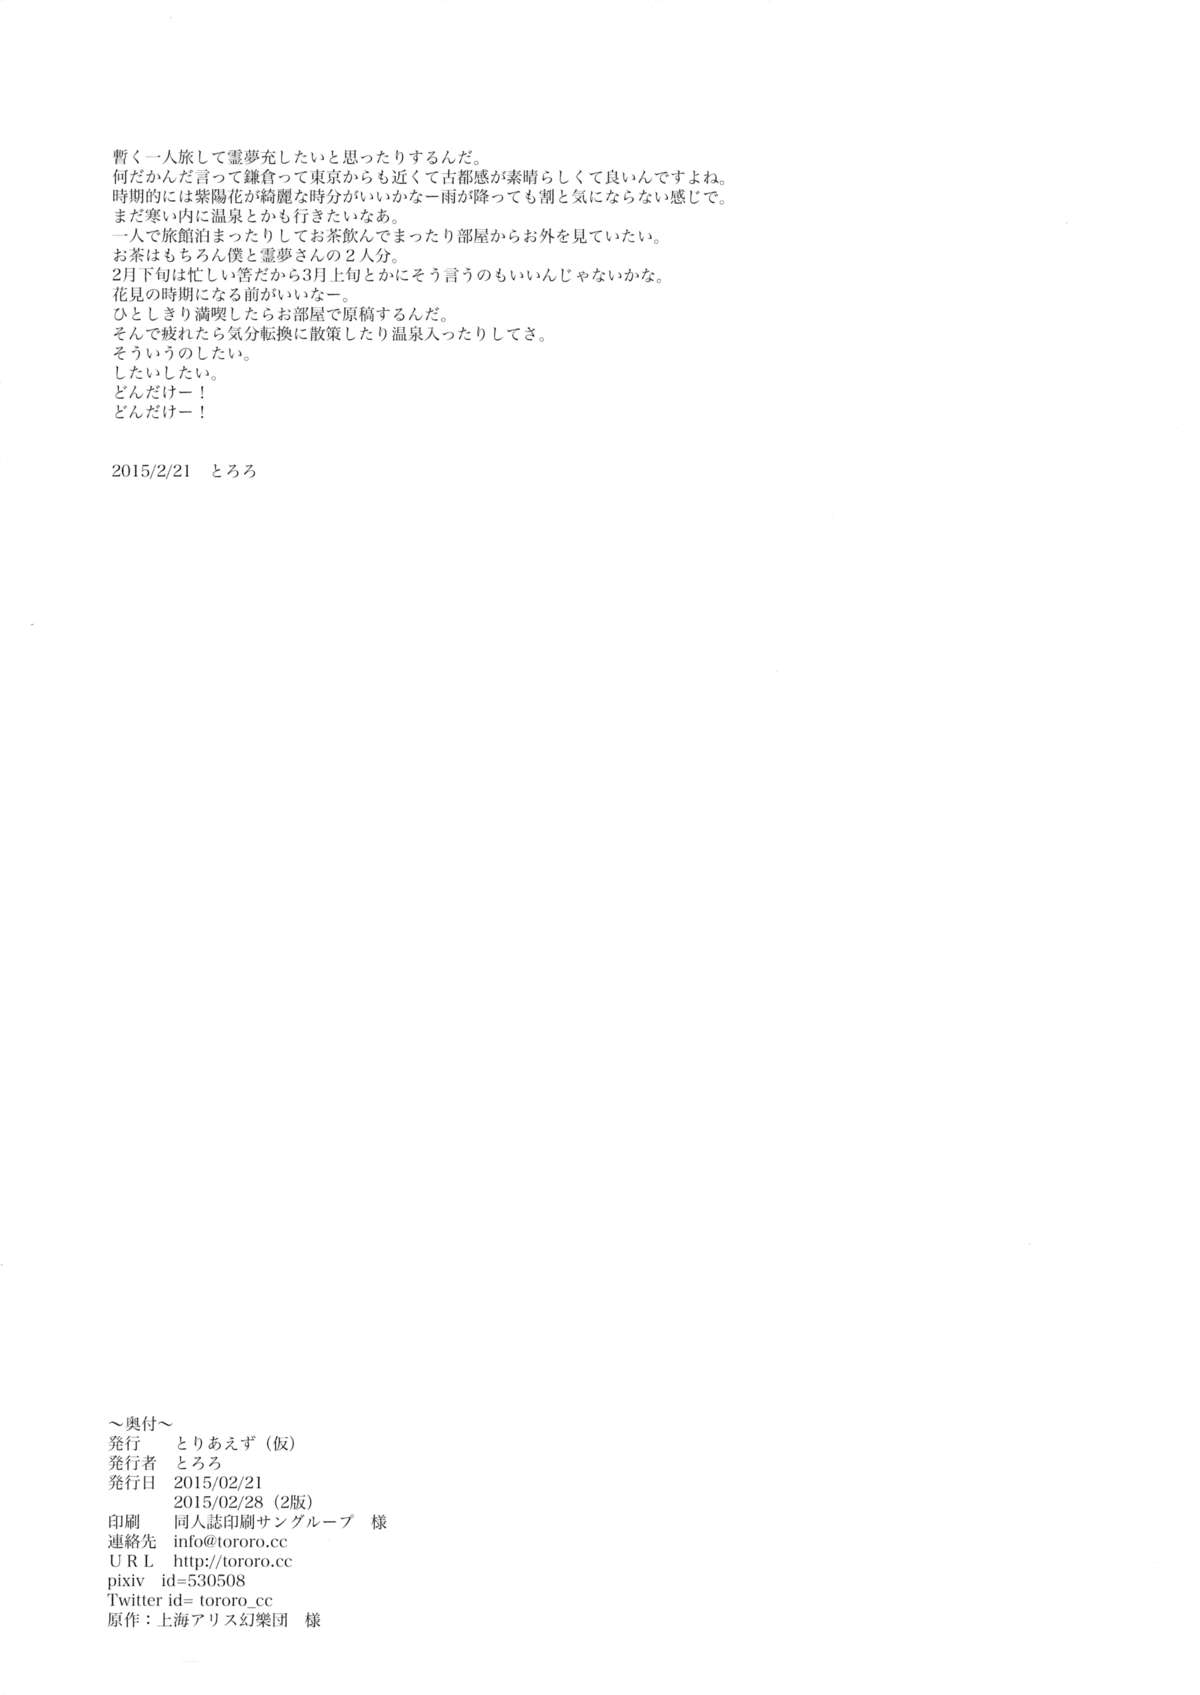 [とりあえず(仮) (とろろ)] FUDAGOSHI-NO (東方Project) [2015年2月28日]